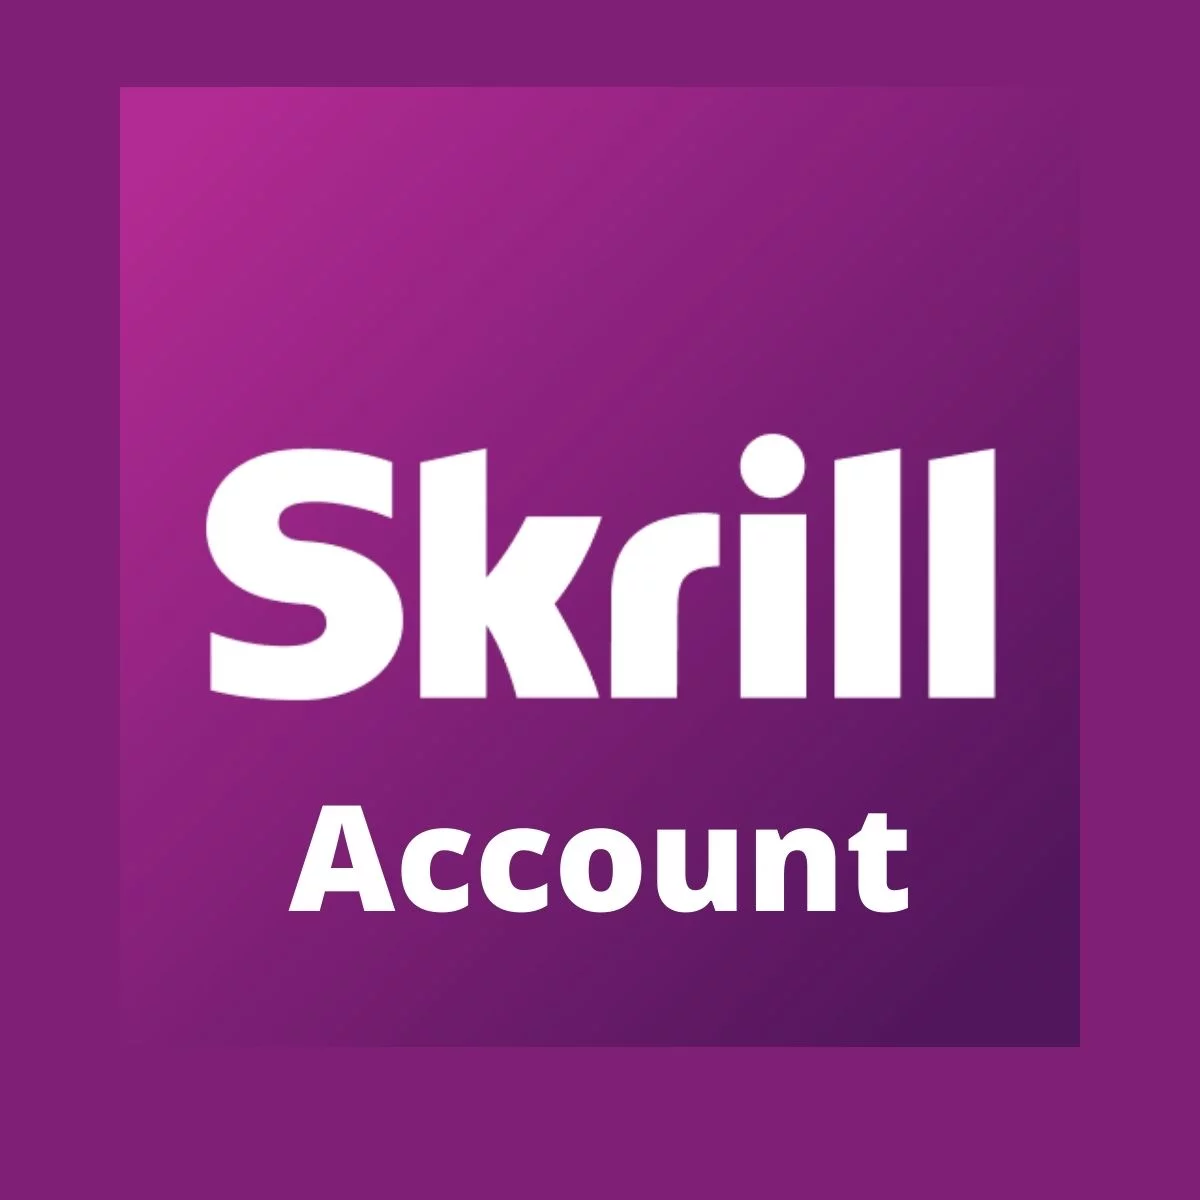 Buy Skrill Accounts